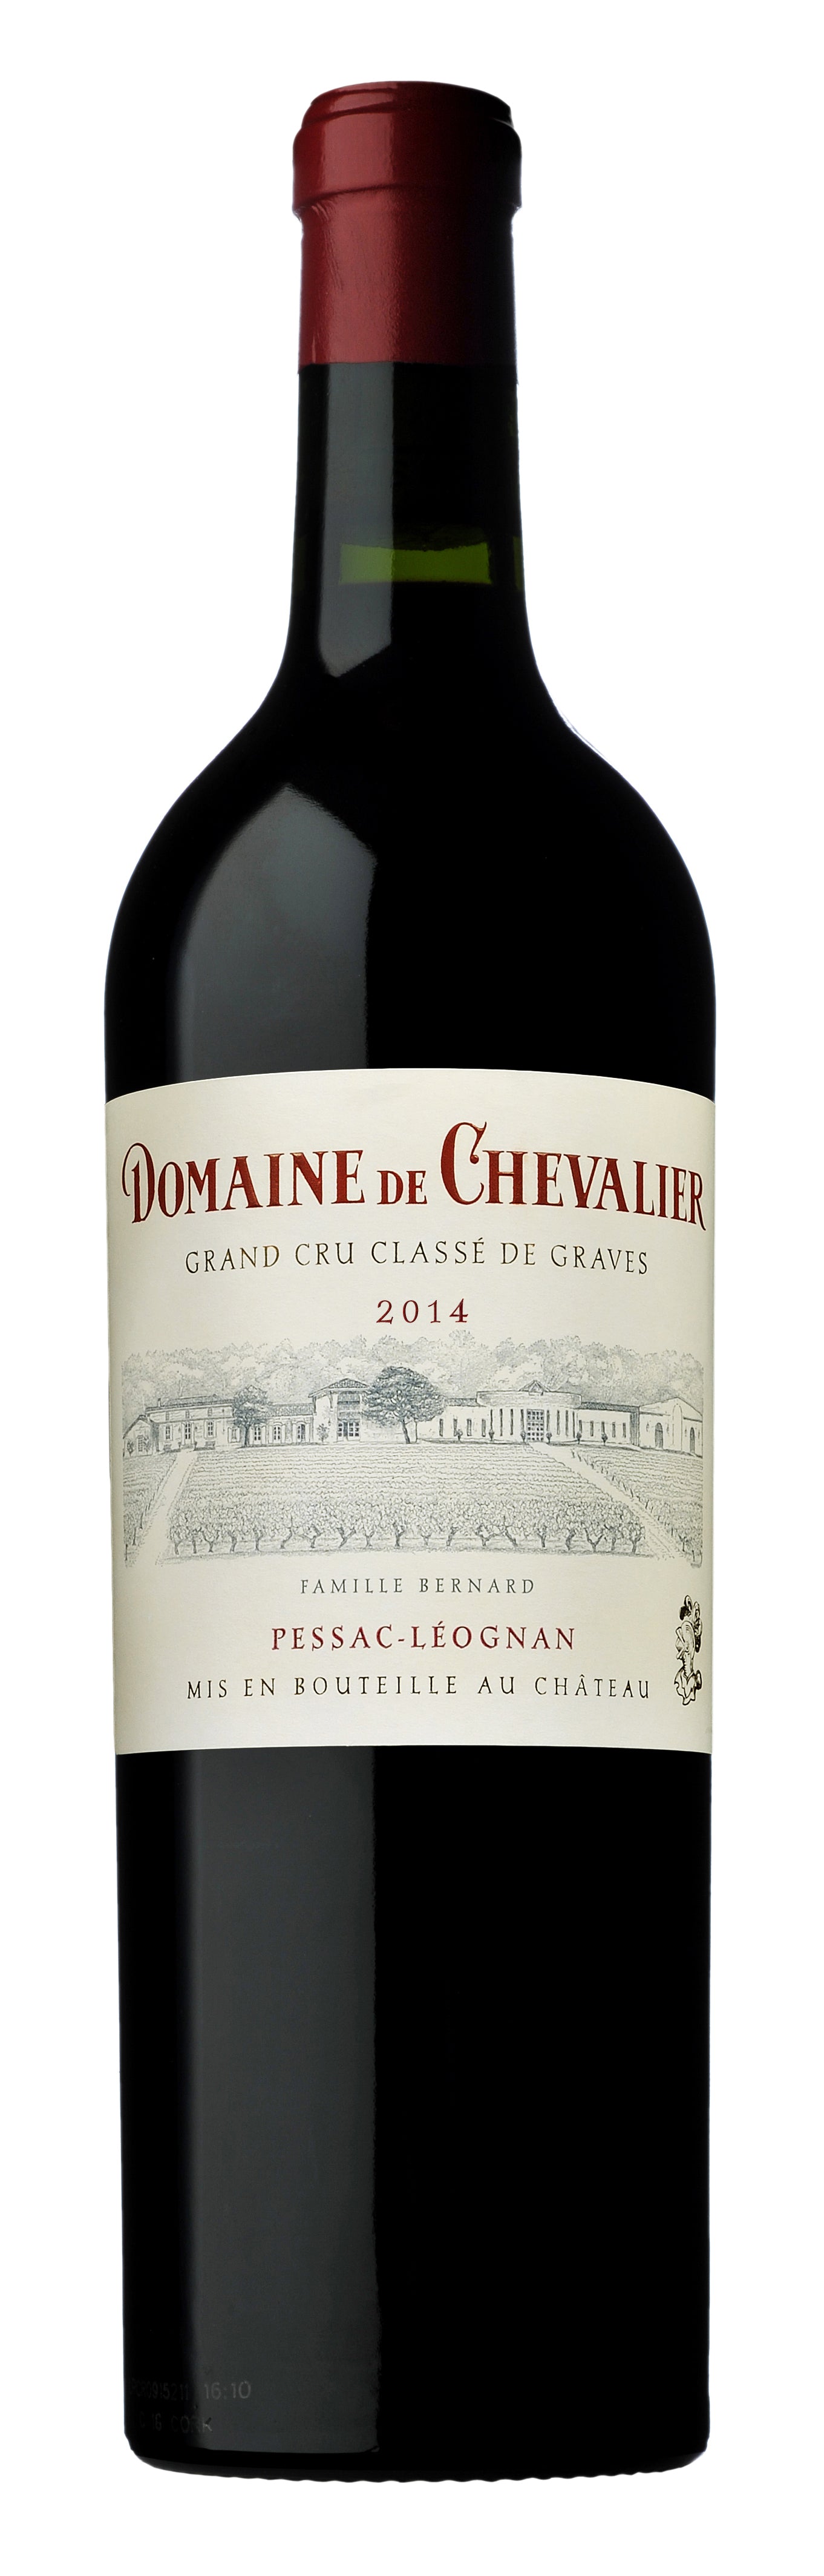 Domaine de Chevalier 2014 The Wine Gate Shop